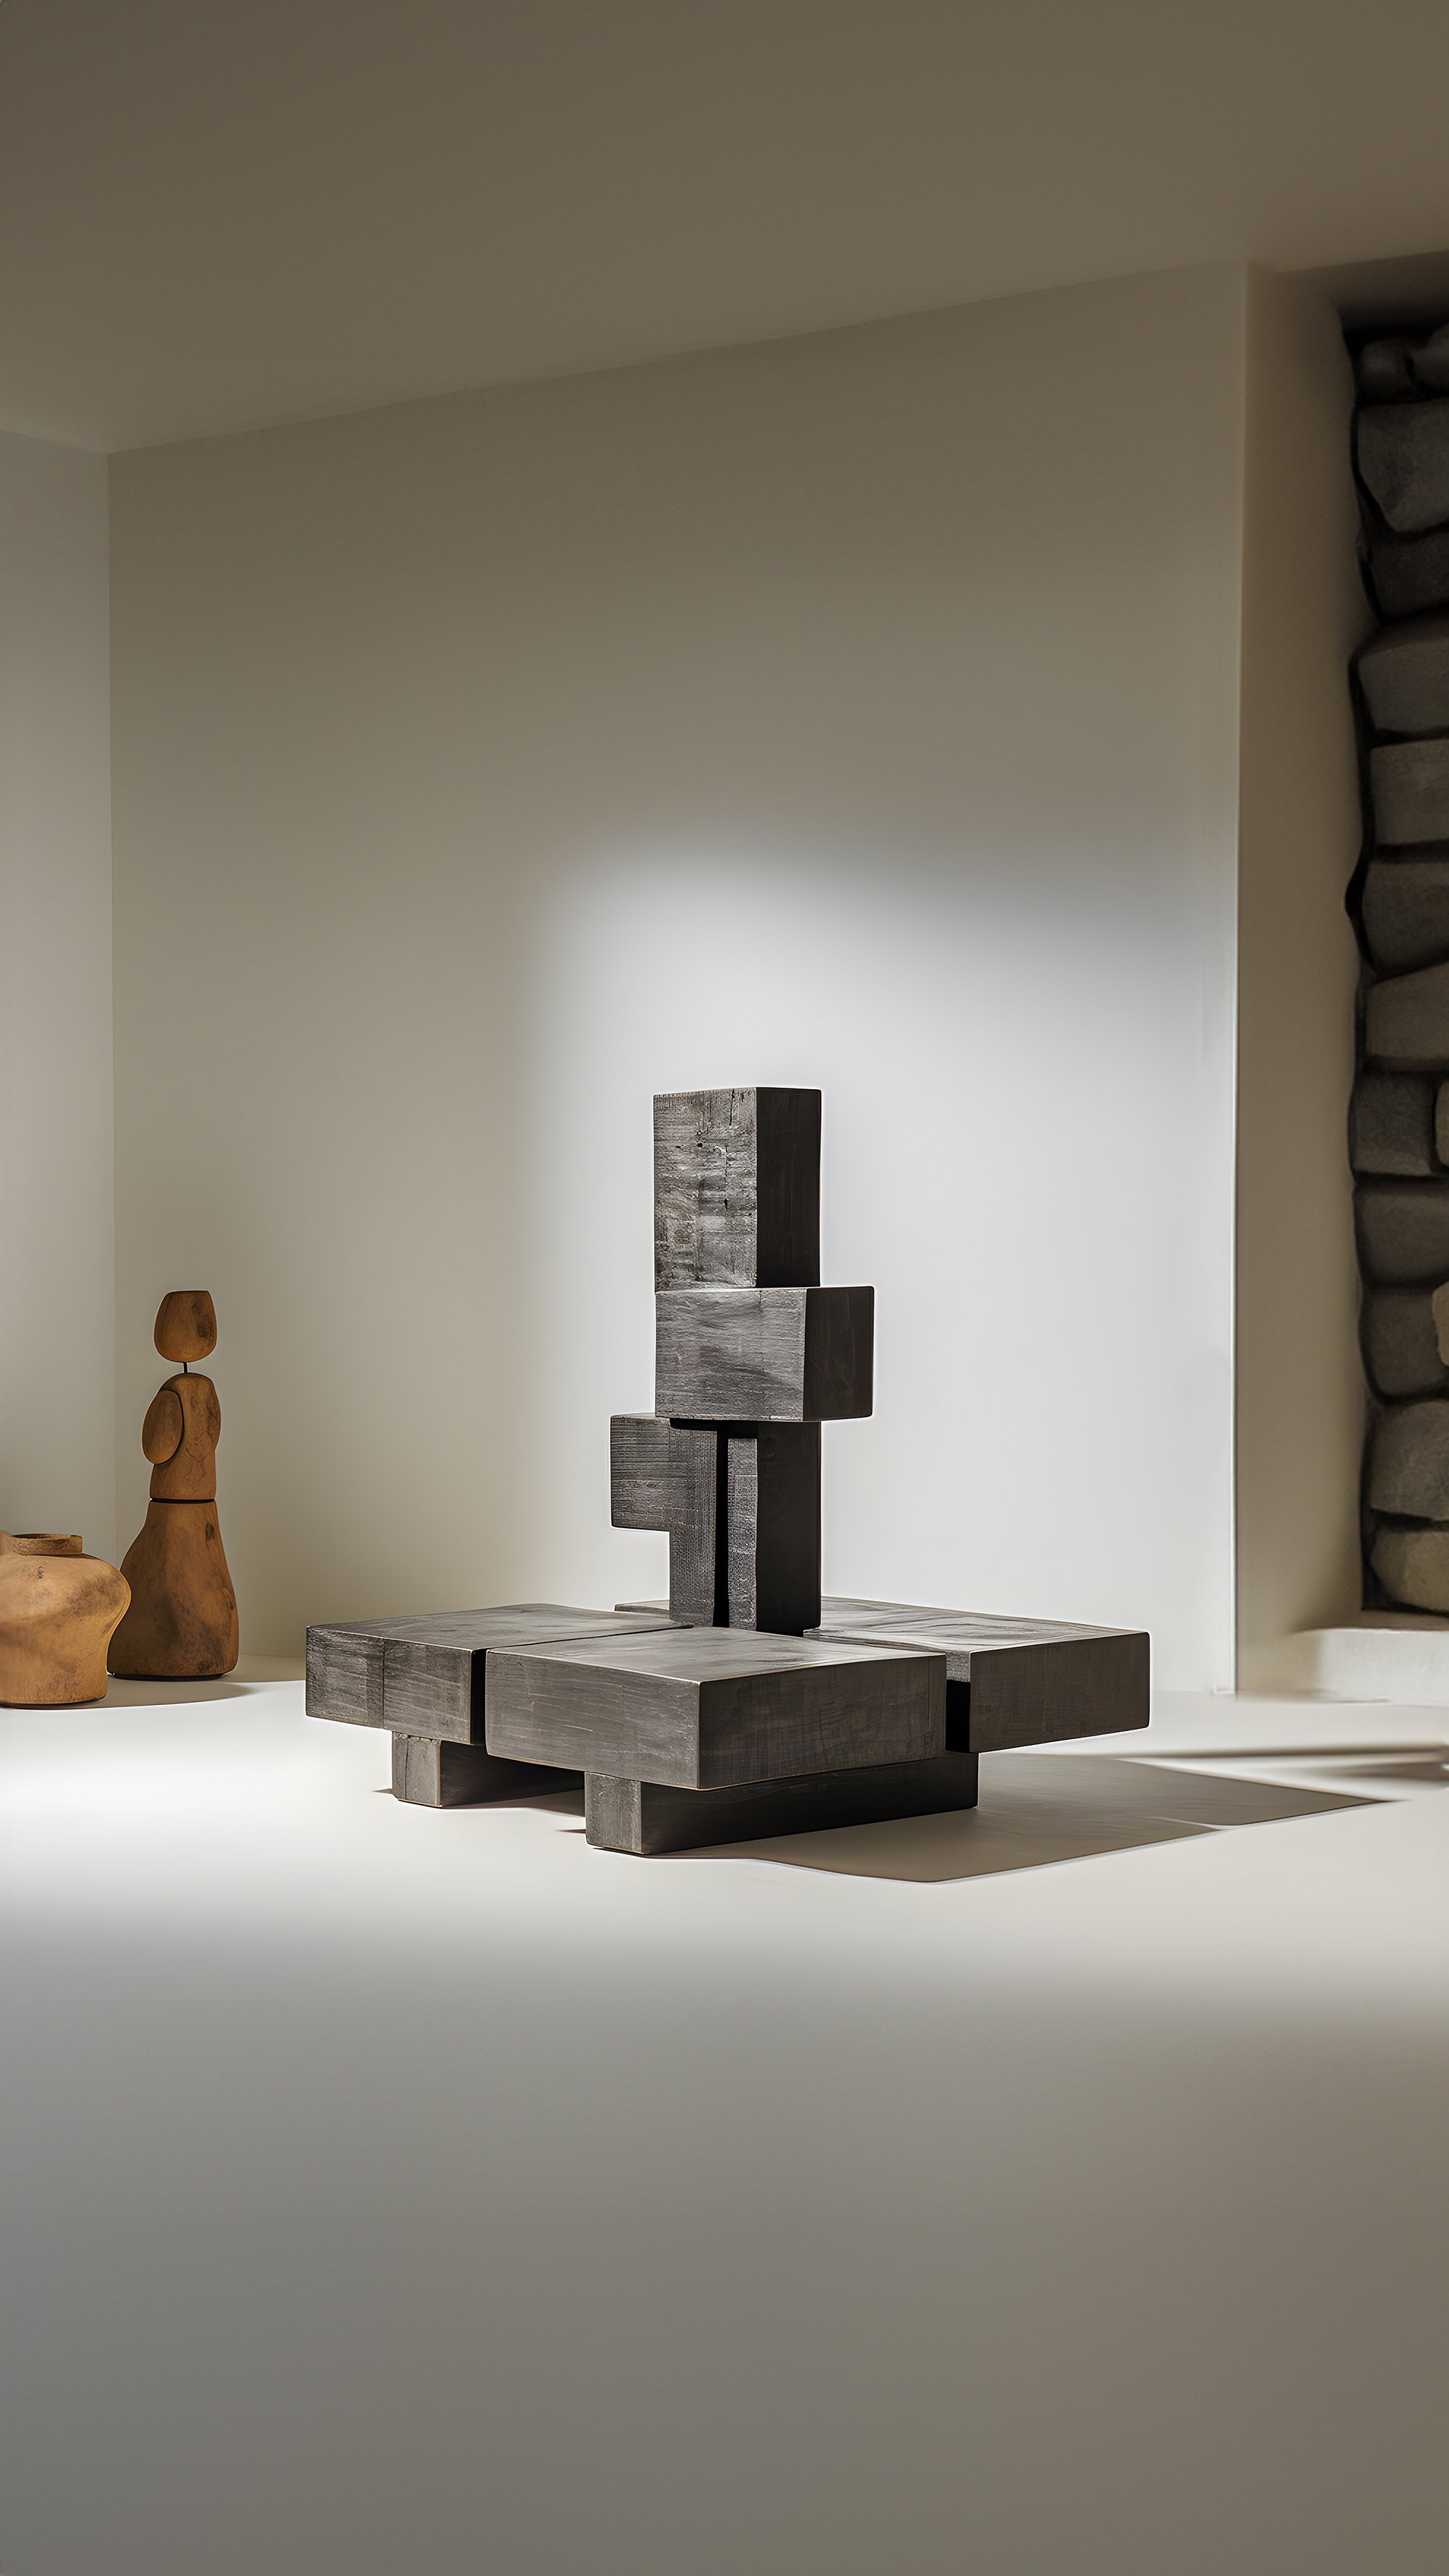 Sculptural Unseen Force 62 Joel Escalona's Solid Wood Table, Modern Art Piece - 5.jpg